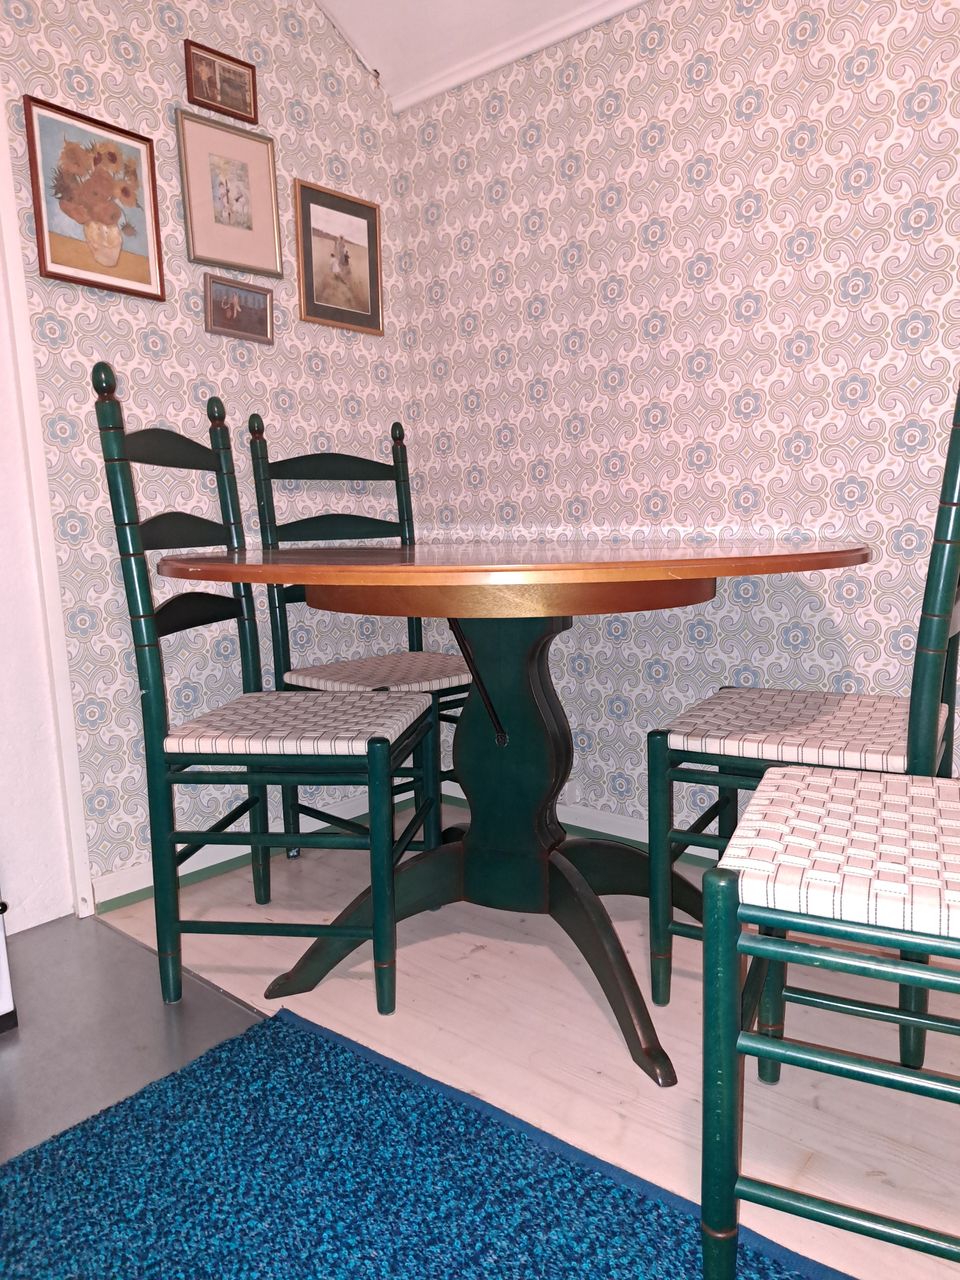 Myydään jatkettava (115-203 cm) vintage -pöytä ja 4 tuolia